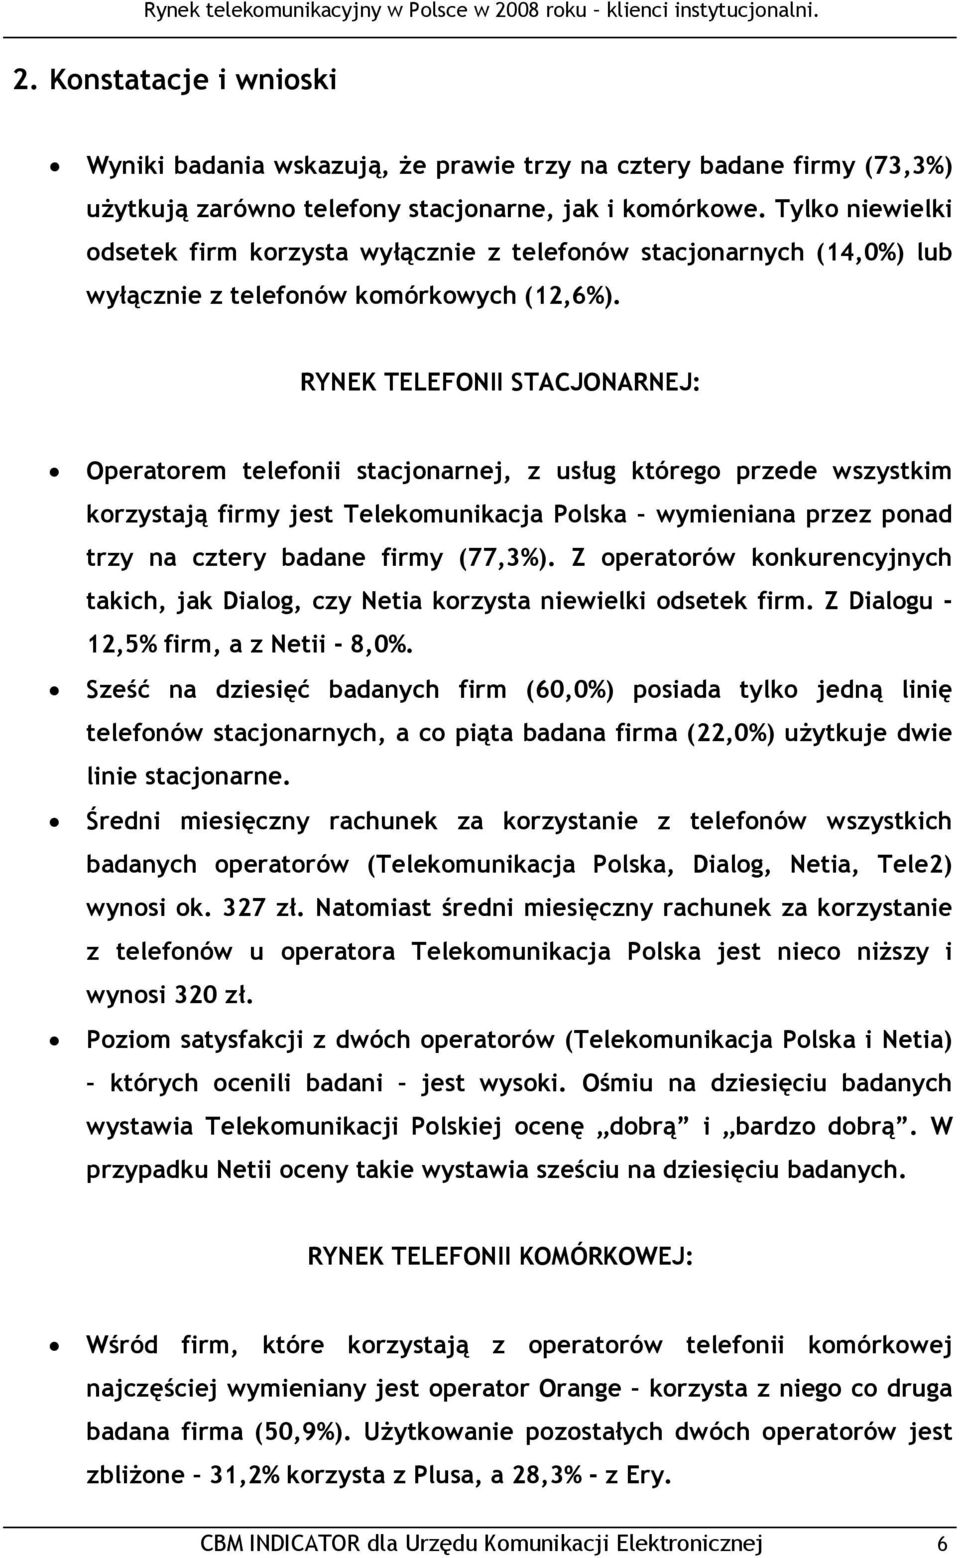 RYNEK TELEFONII STACJONARNEJ: Operatorem telefonii stacjonarnej, z usług którego przede wszystkim korzystają firmy jest Telekomunikacja Polska wymieniana przez ponad trzy na cztery badane firmy